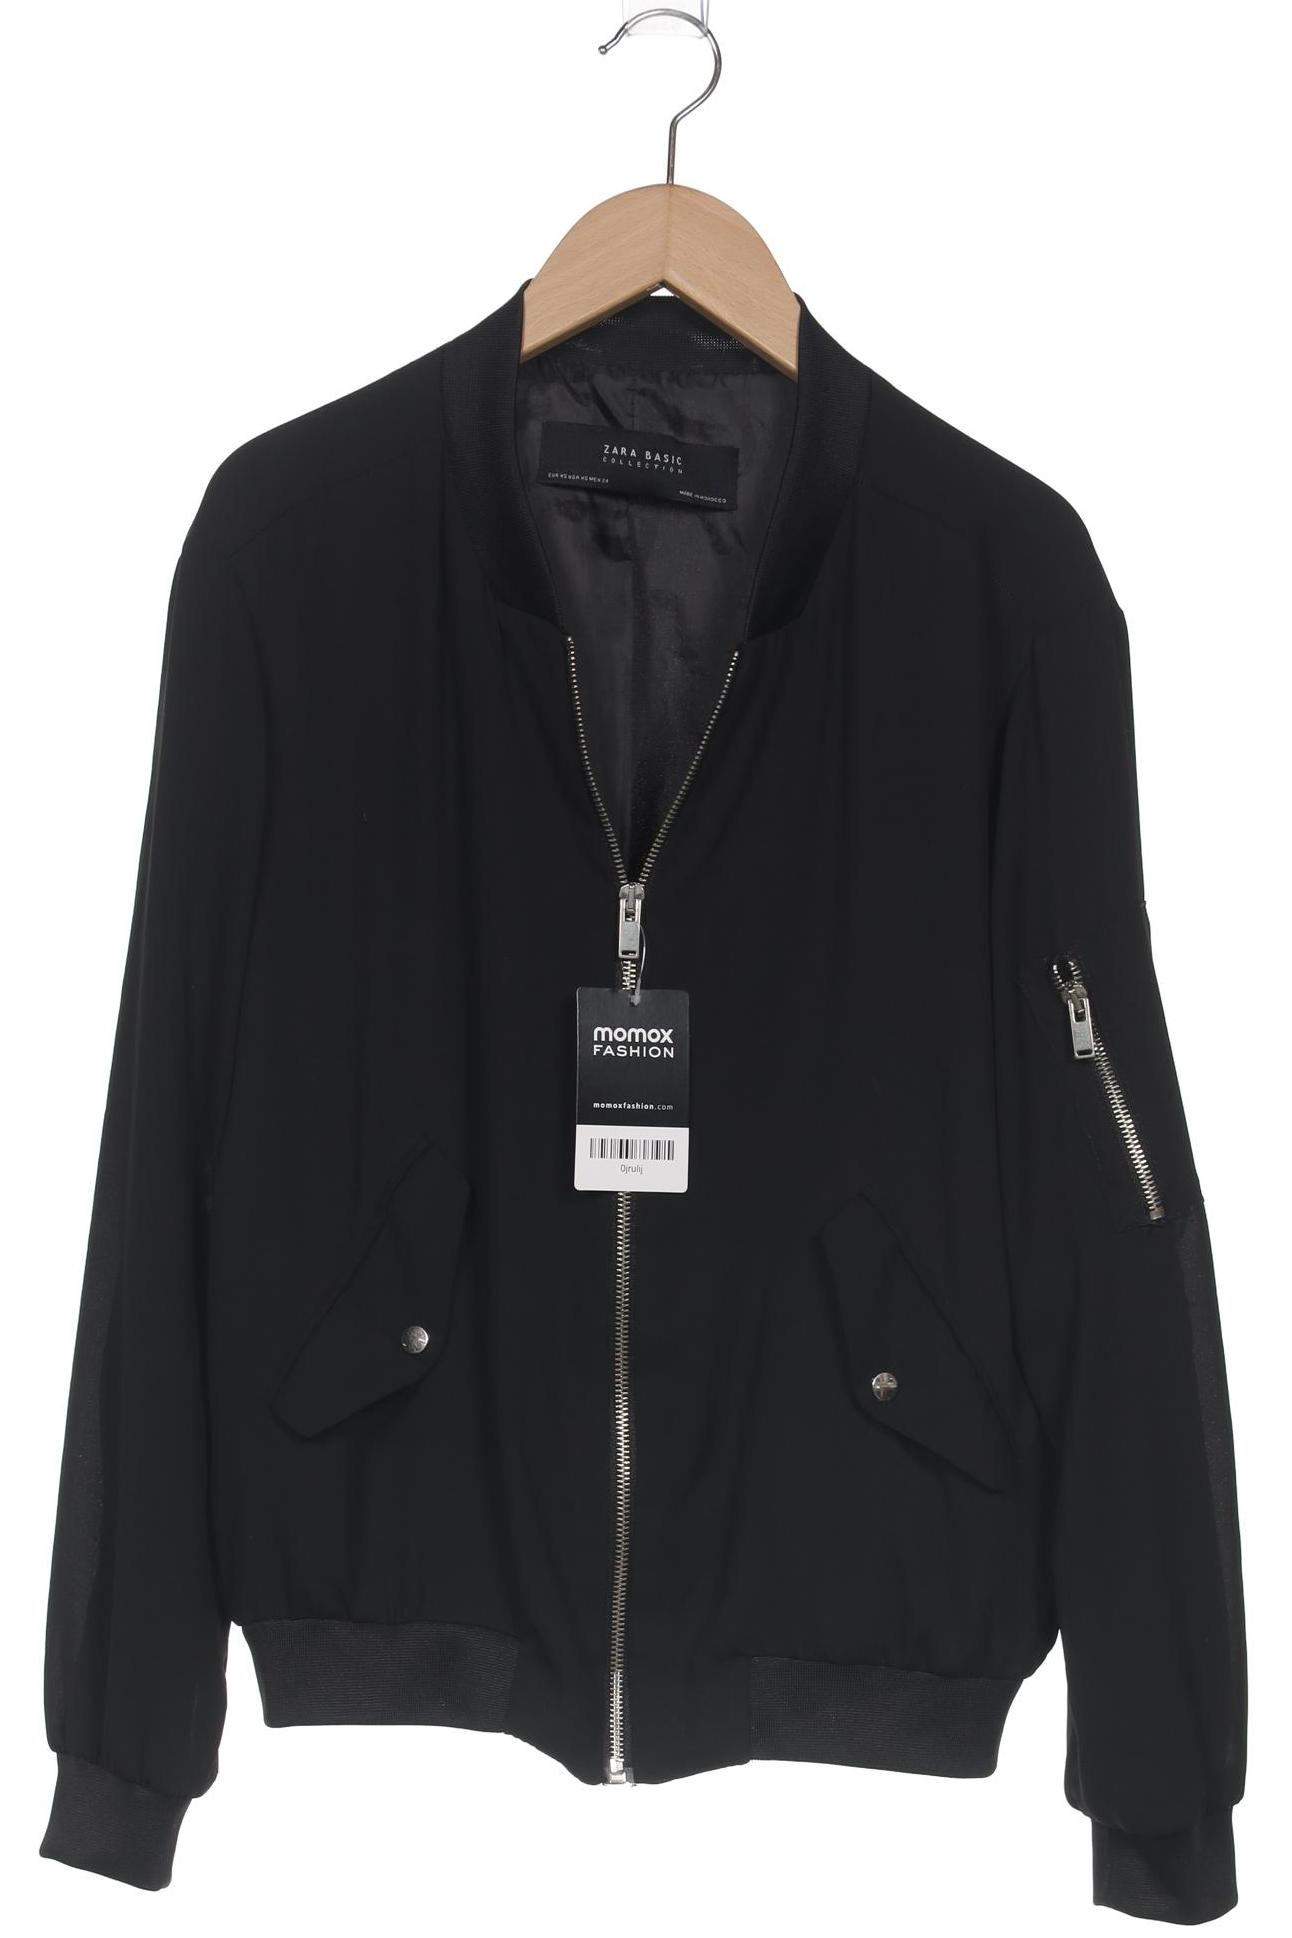 Zara Damen Jacke, schwarz, Gr. 34 von ZARA